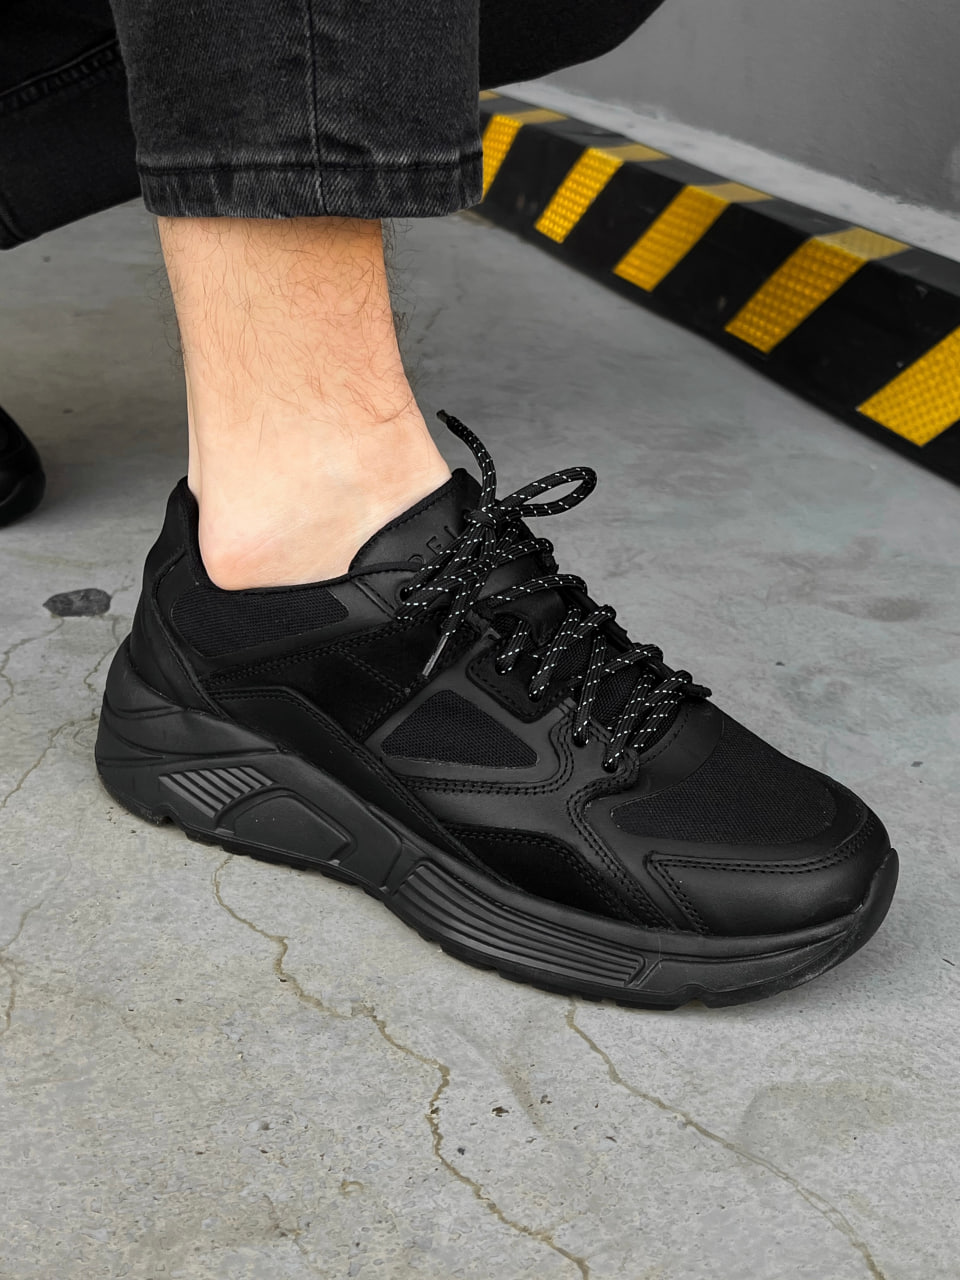 Мужские кроссовки кожаные Ultimate черные (водонепроницаемые) VDLK - Фото 2